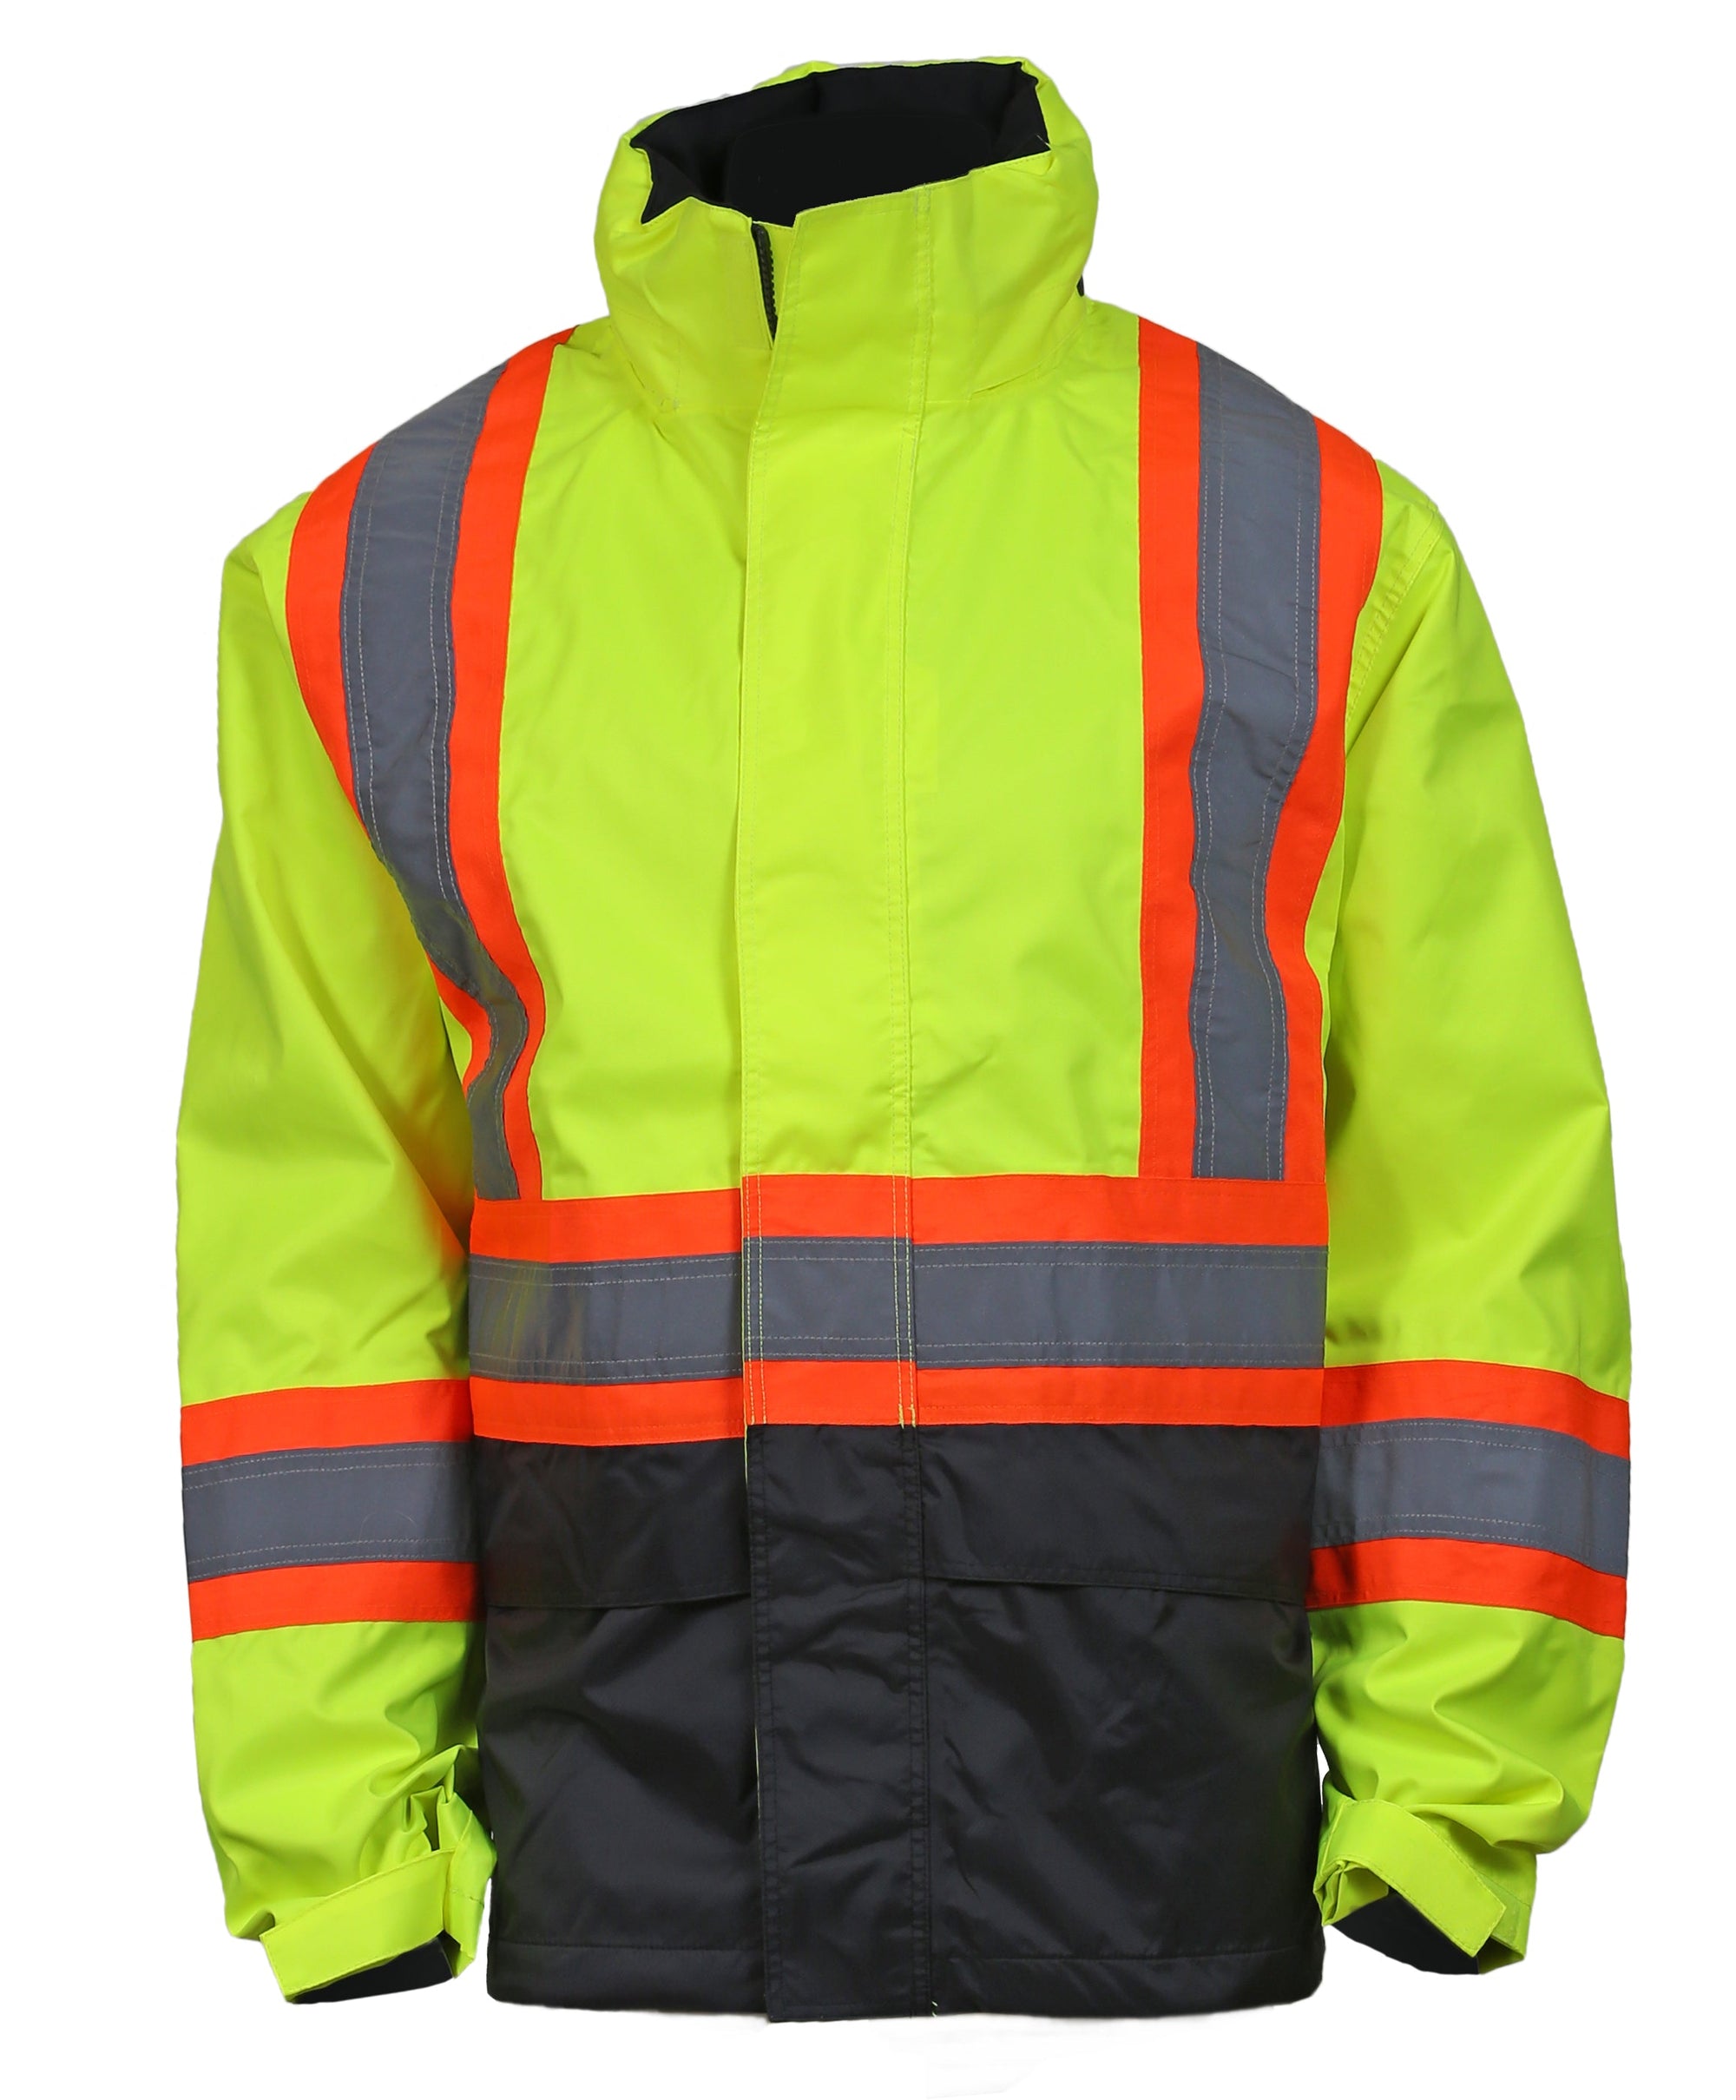 Helly Hansen Alta Shell Safety Rain Jacket - Work World - Workwear, Work Boots, Safety Gear